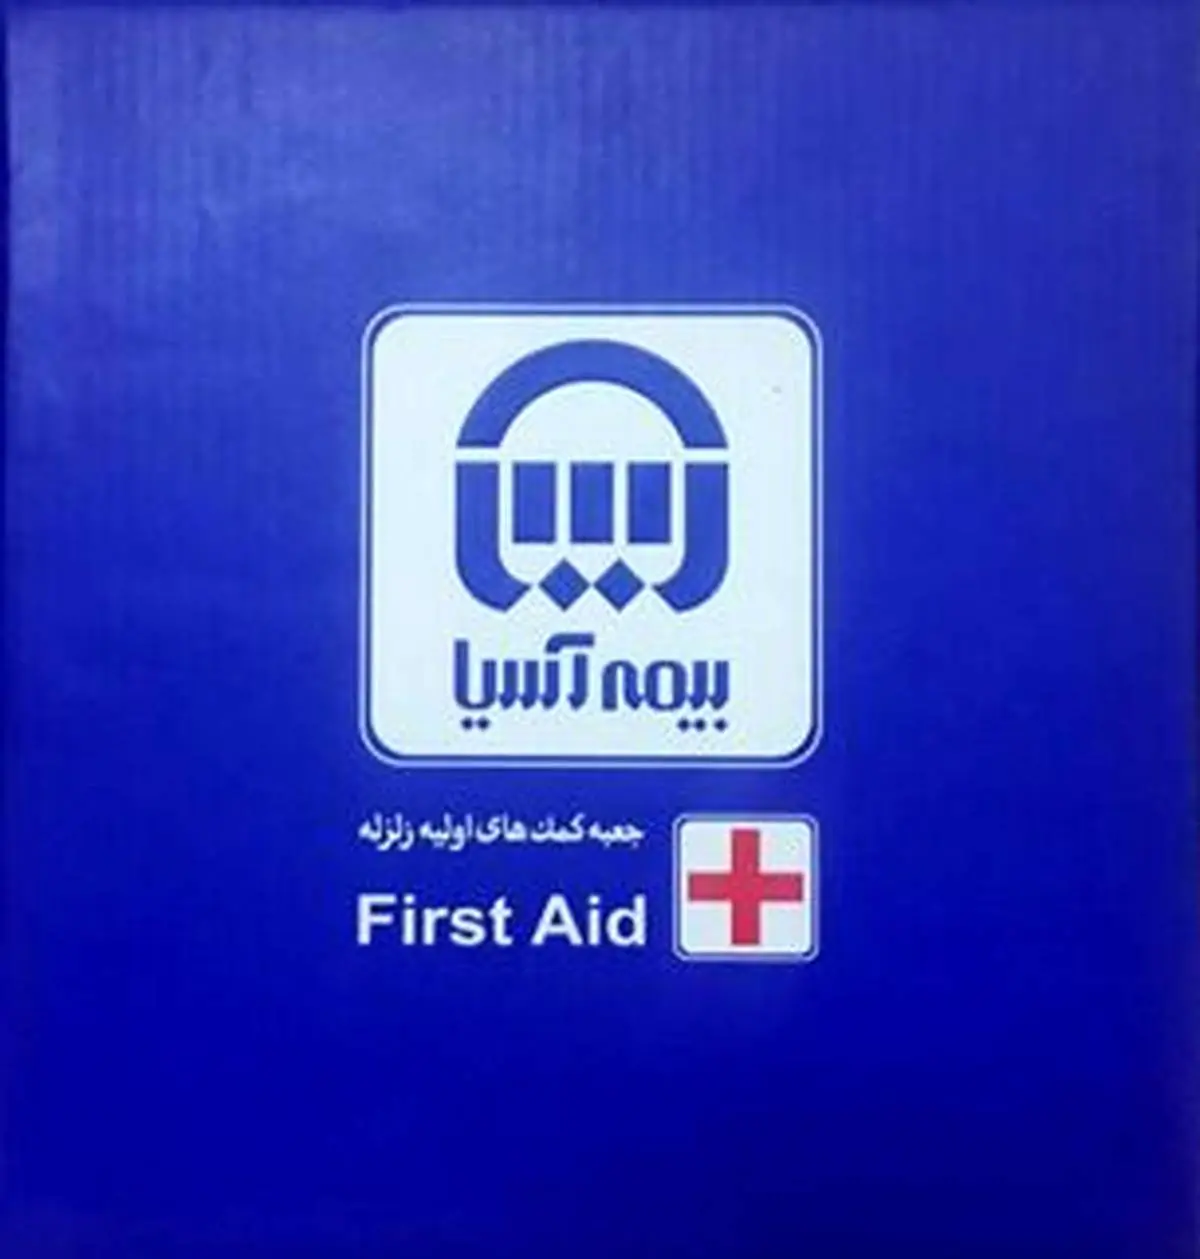 جعبه کمک های اولیه پشتیبان شما در بحران های بعد از زلزله